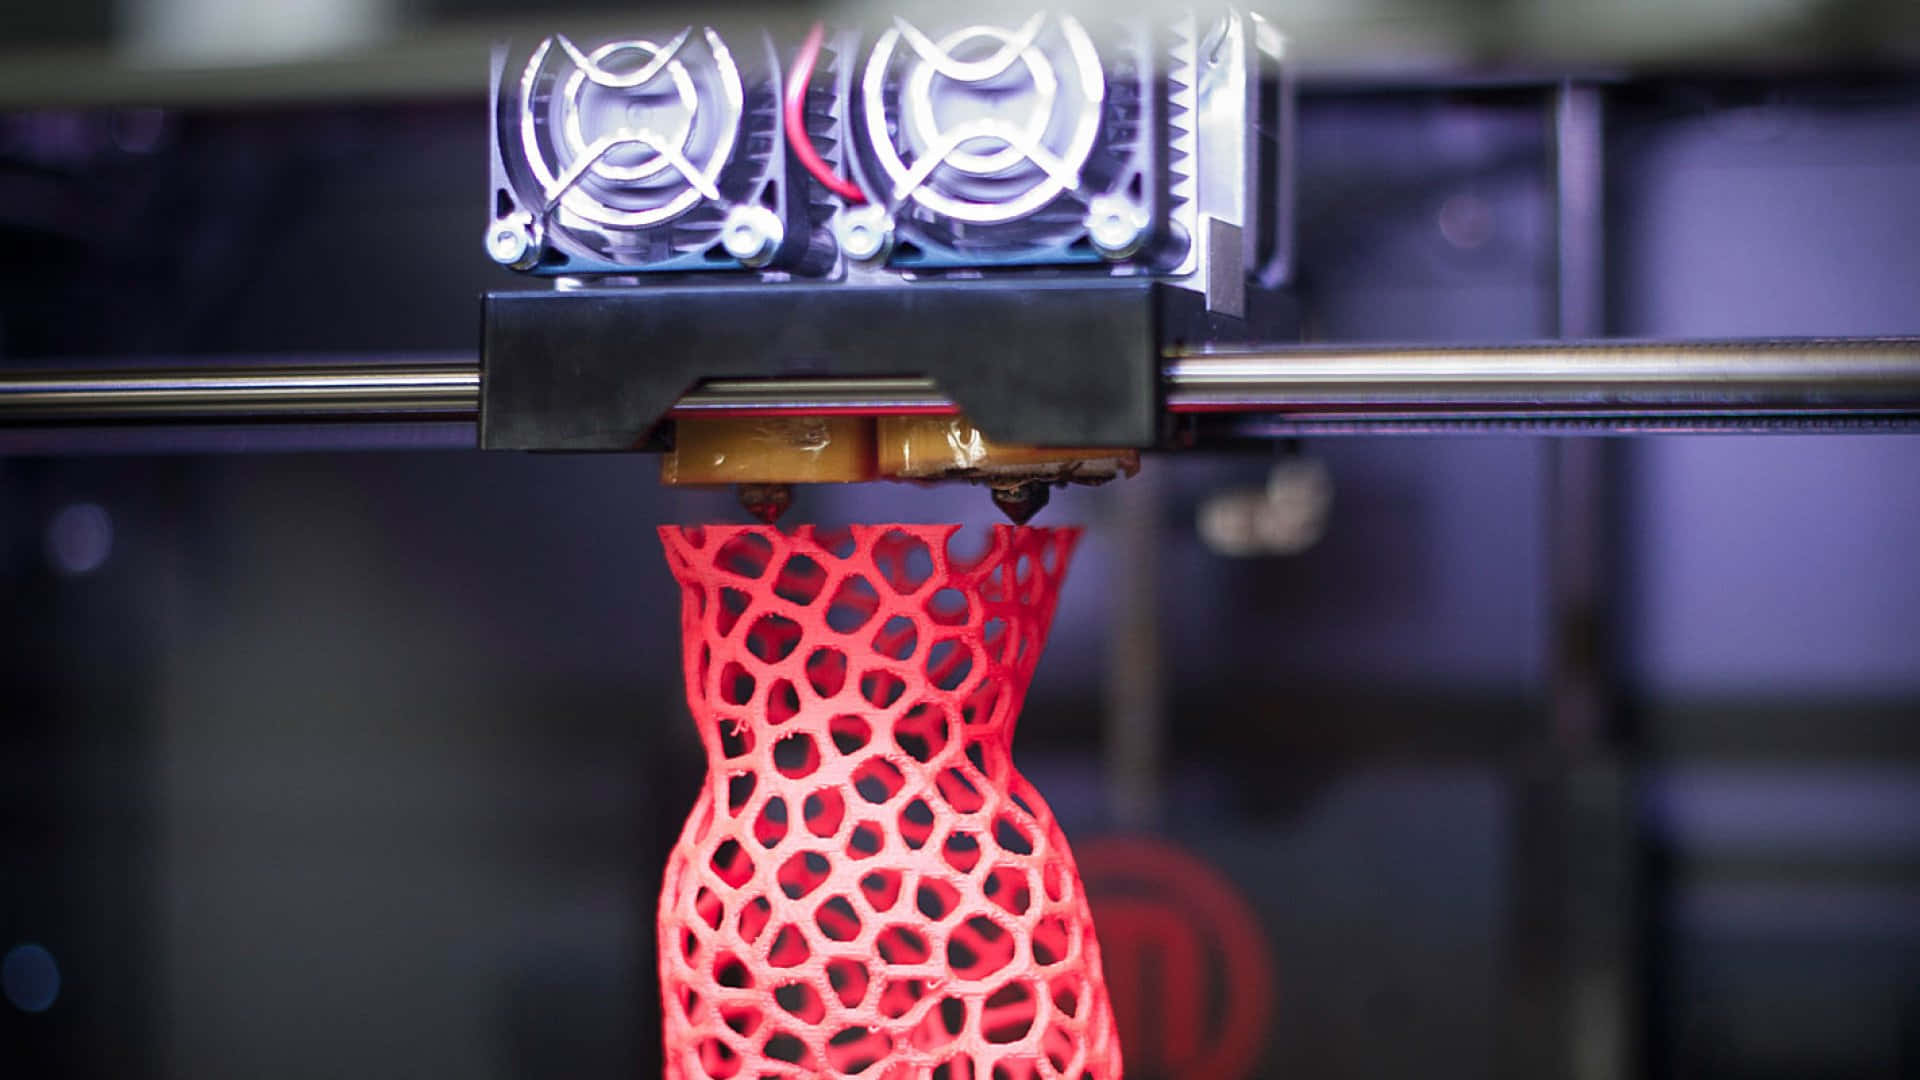 Advanced 3D Printer at Work in a Futuristic Laboratory Wallpaper